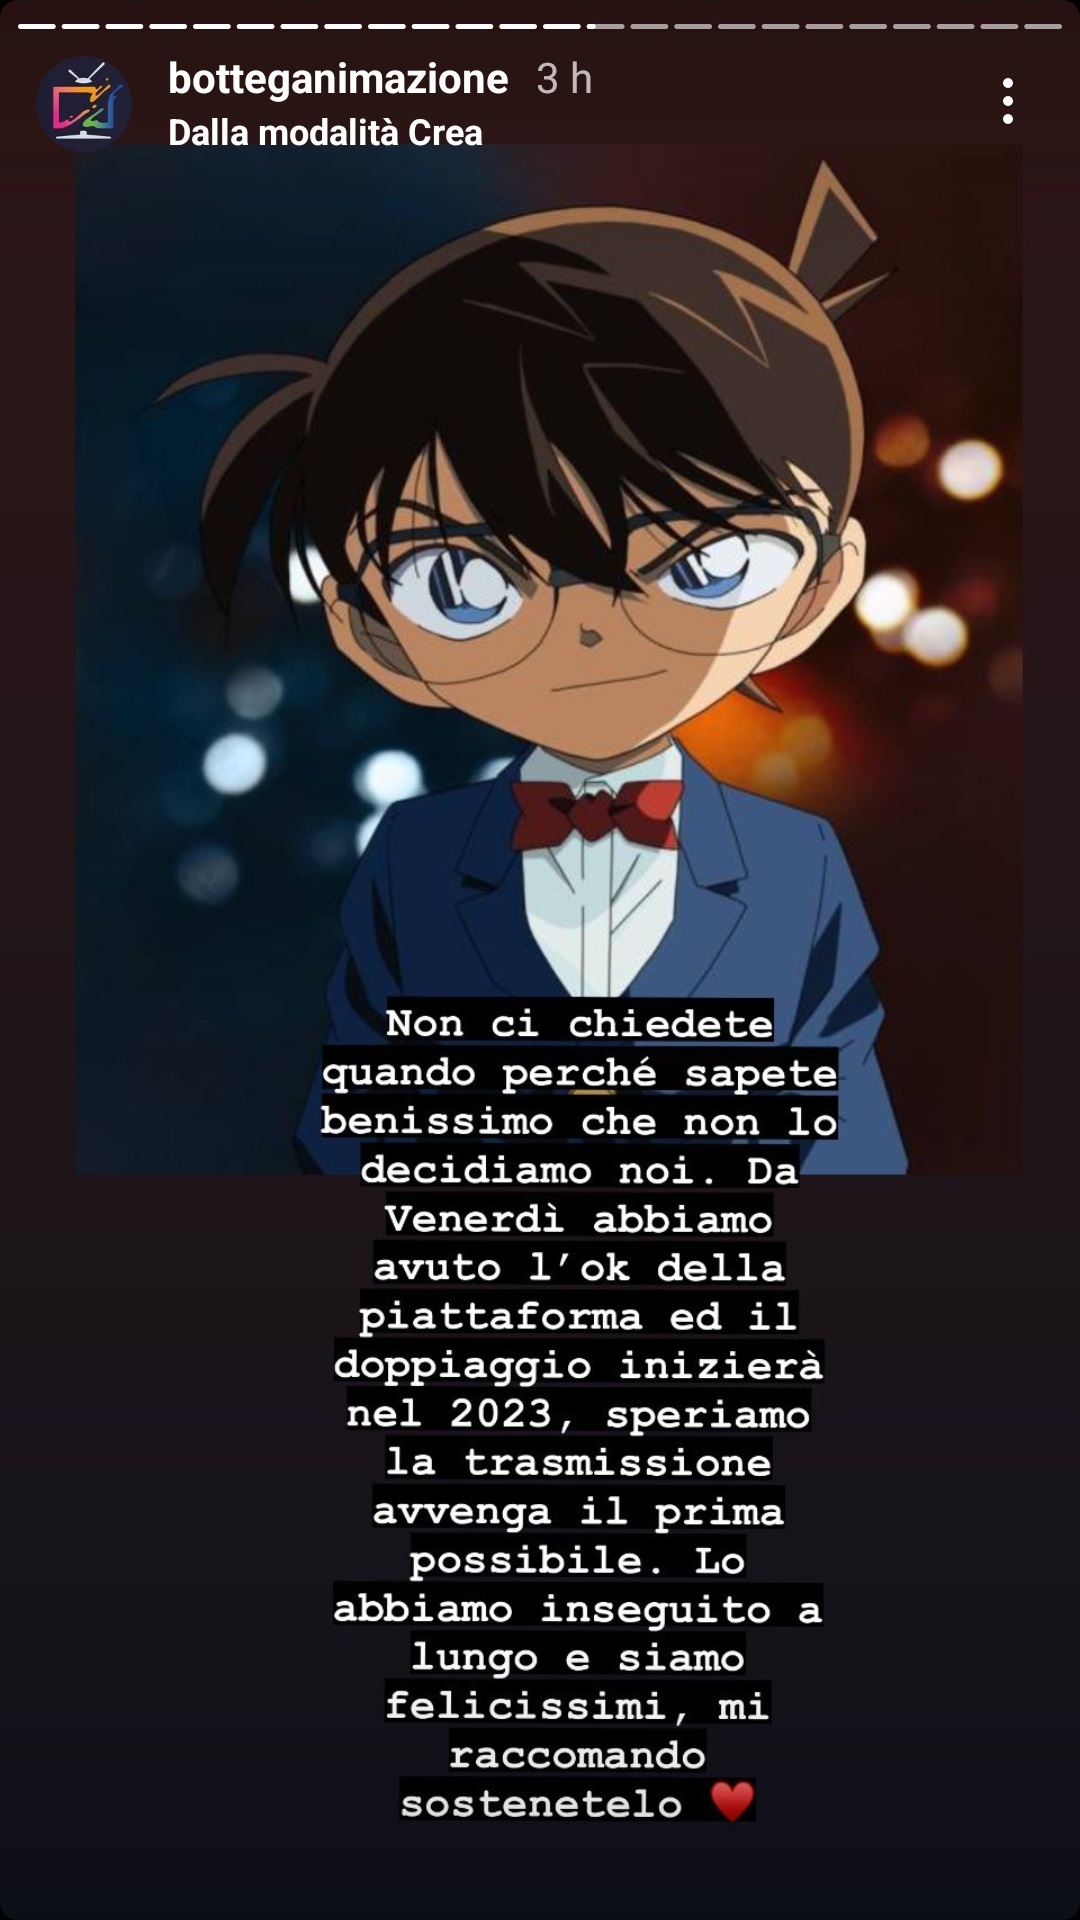 Detective Conan torna in Italia, l'annuncio - Stories Botteganimazione 5